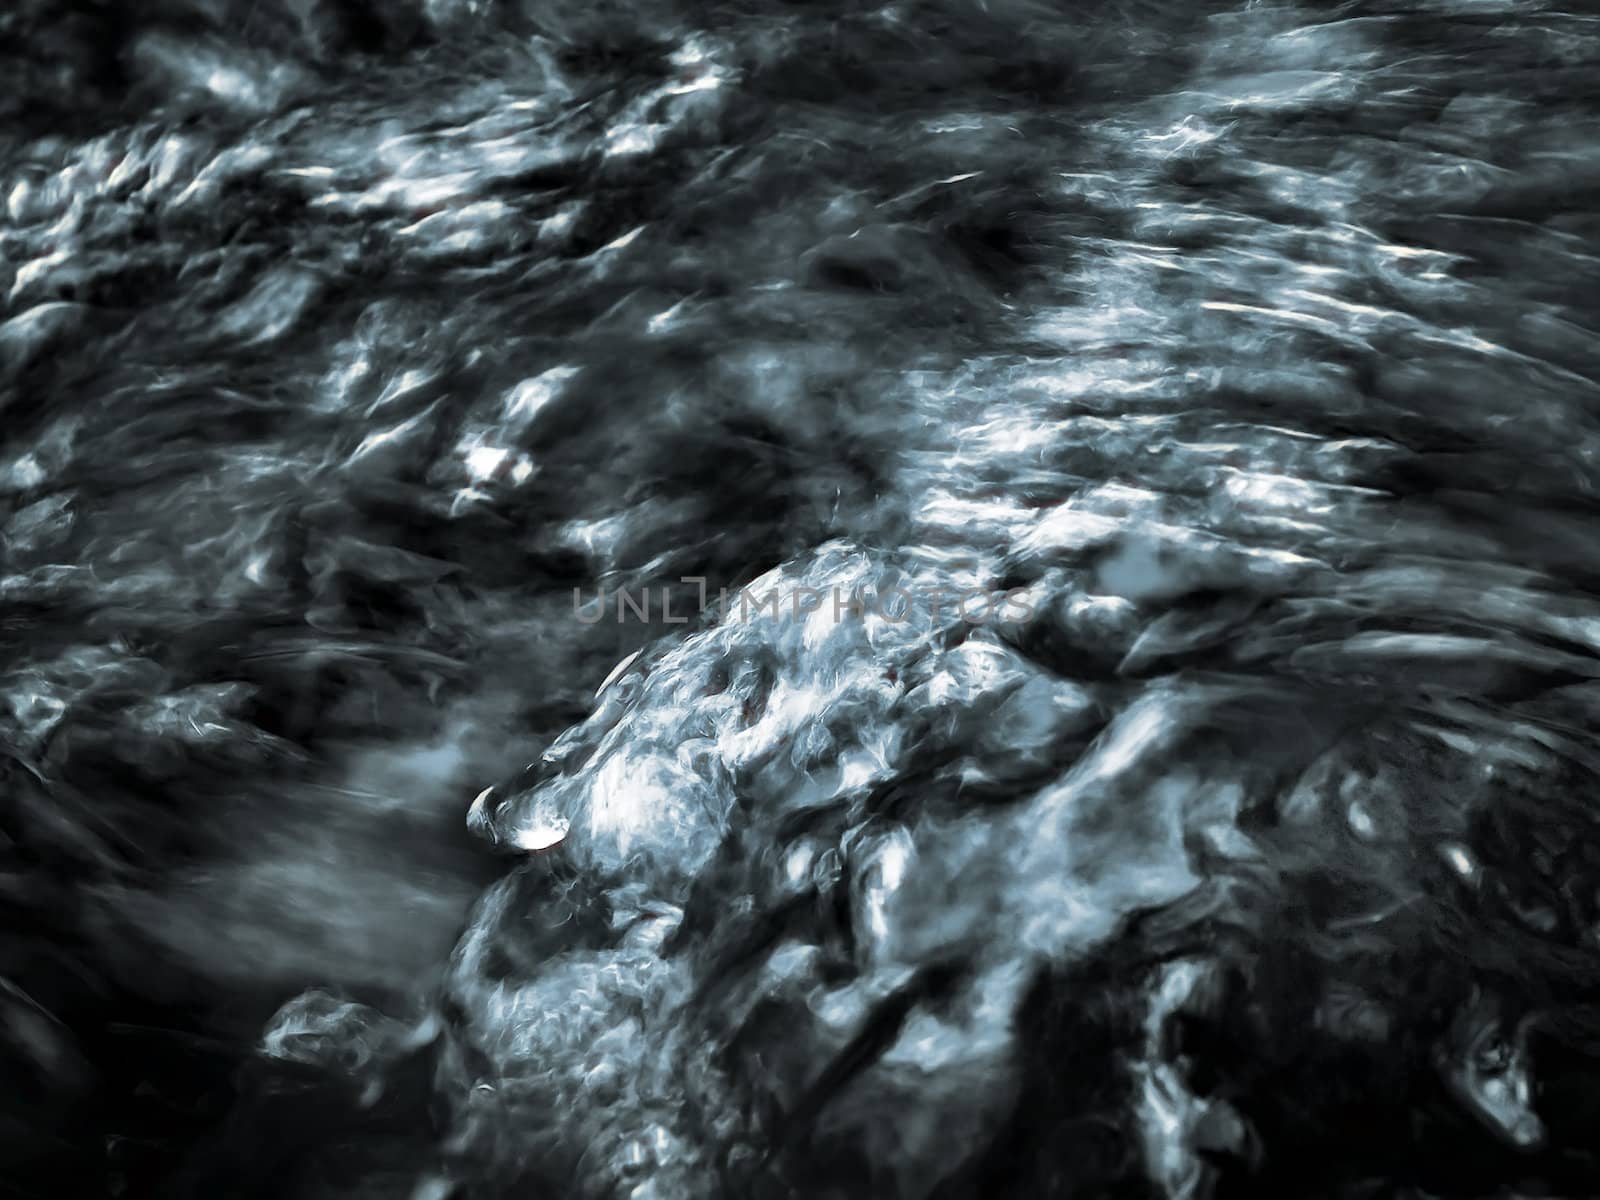 Abstract image of fresh water surface at close range